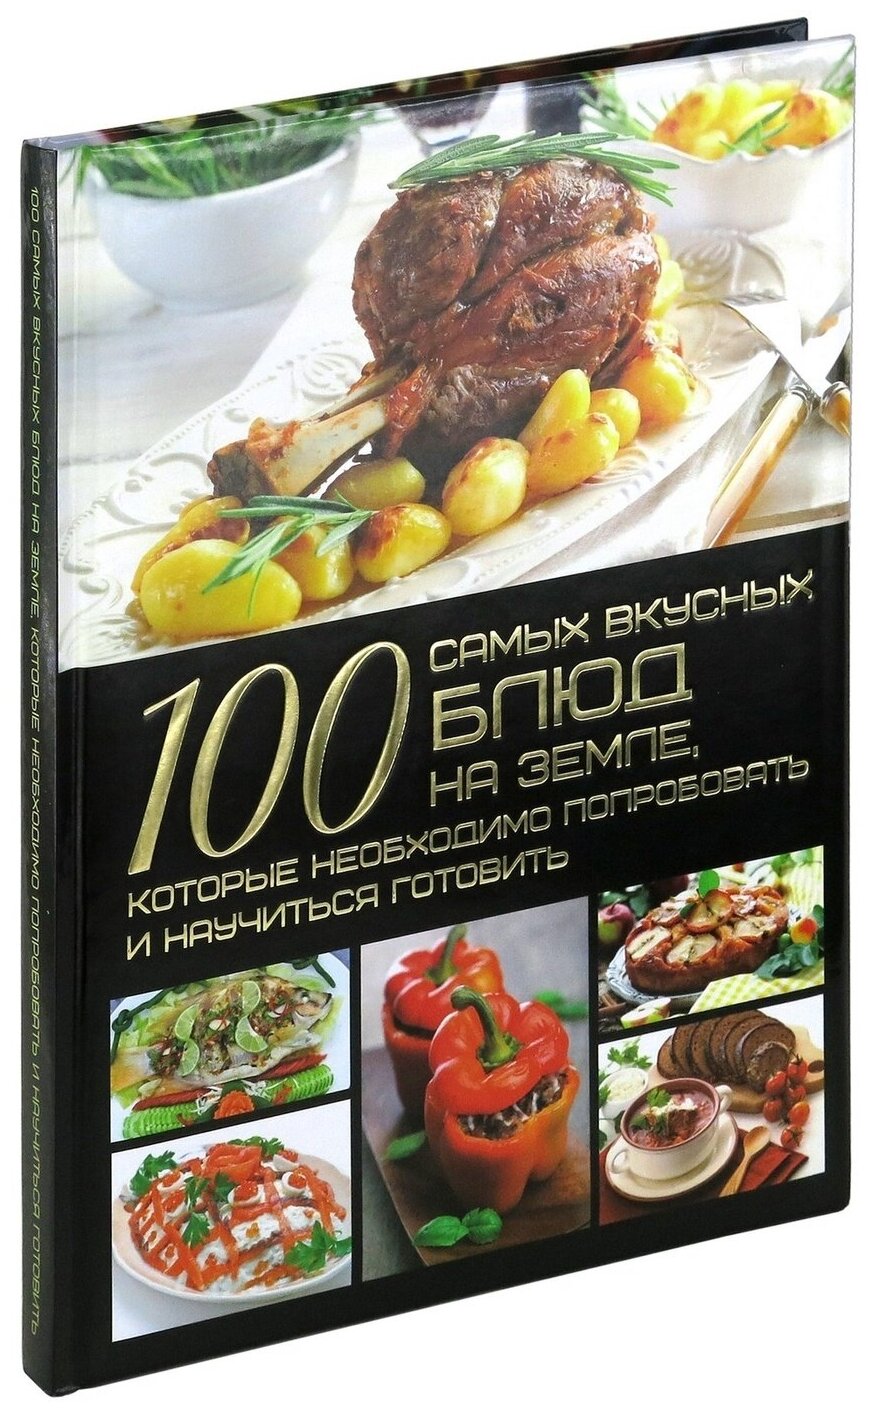 100 самых вкусных блюд на земле, которые необходимо попробовать и научиться готовить - фото №1